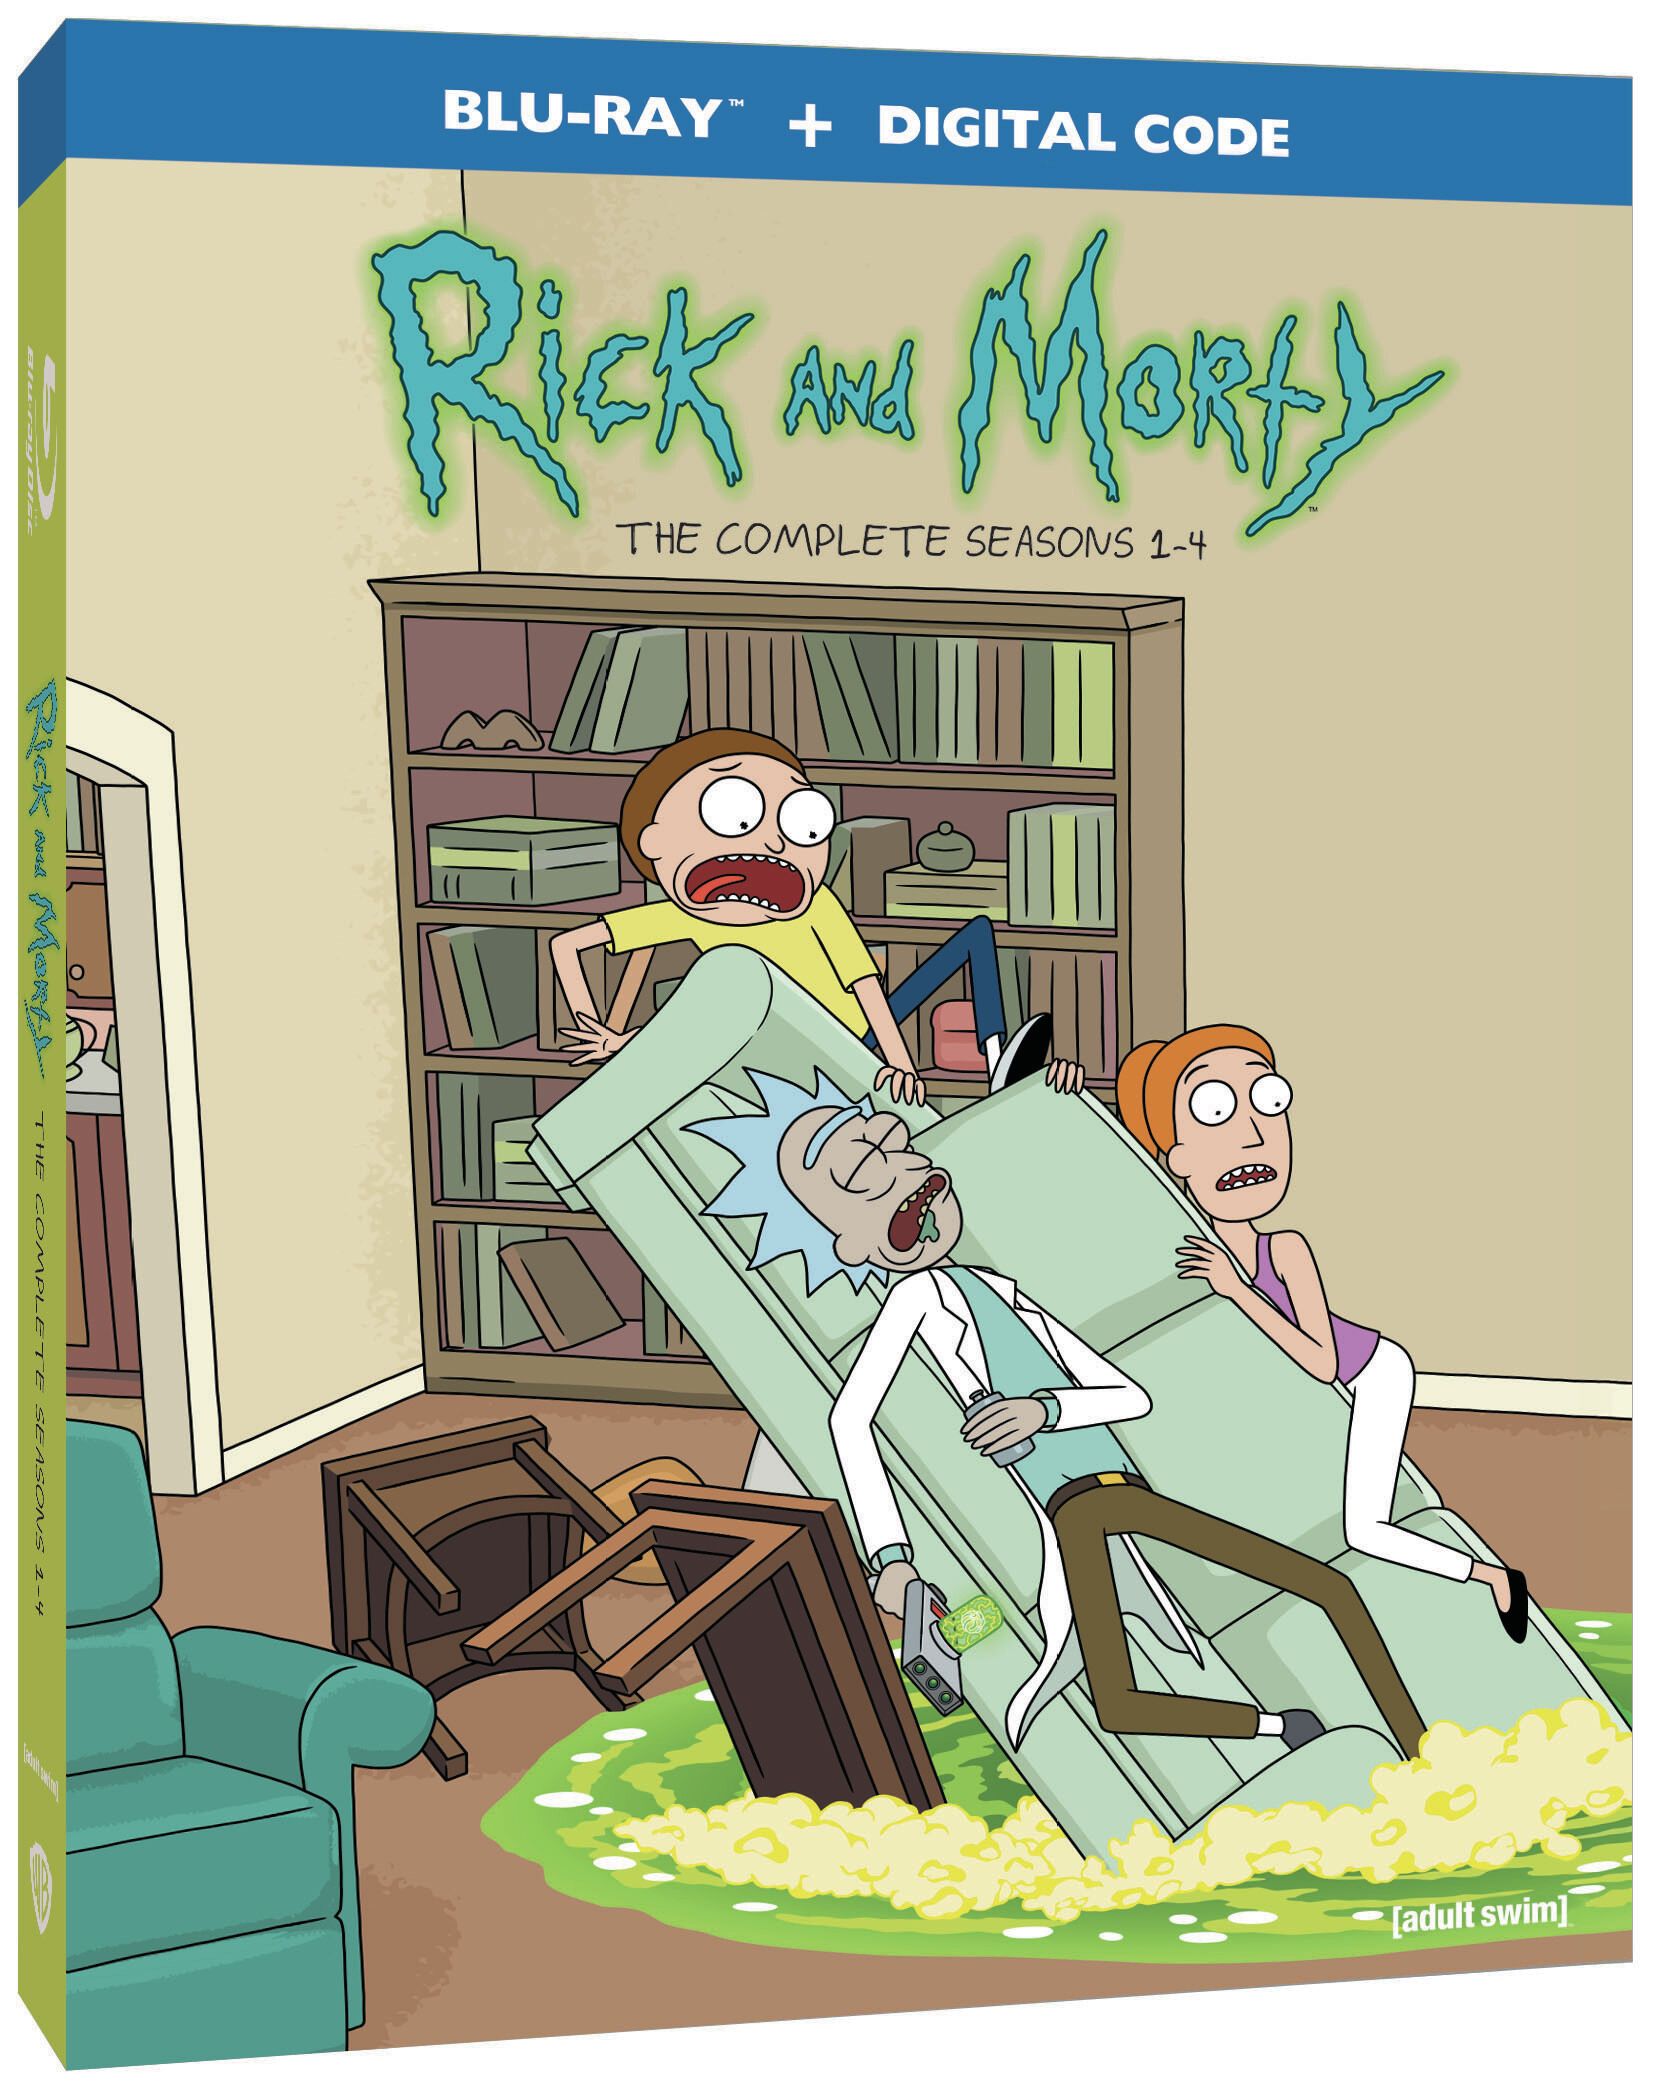 Рик и Морти обявява датата на издаване на Blu-ray за сезони 1-4